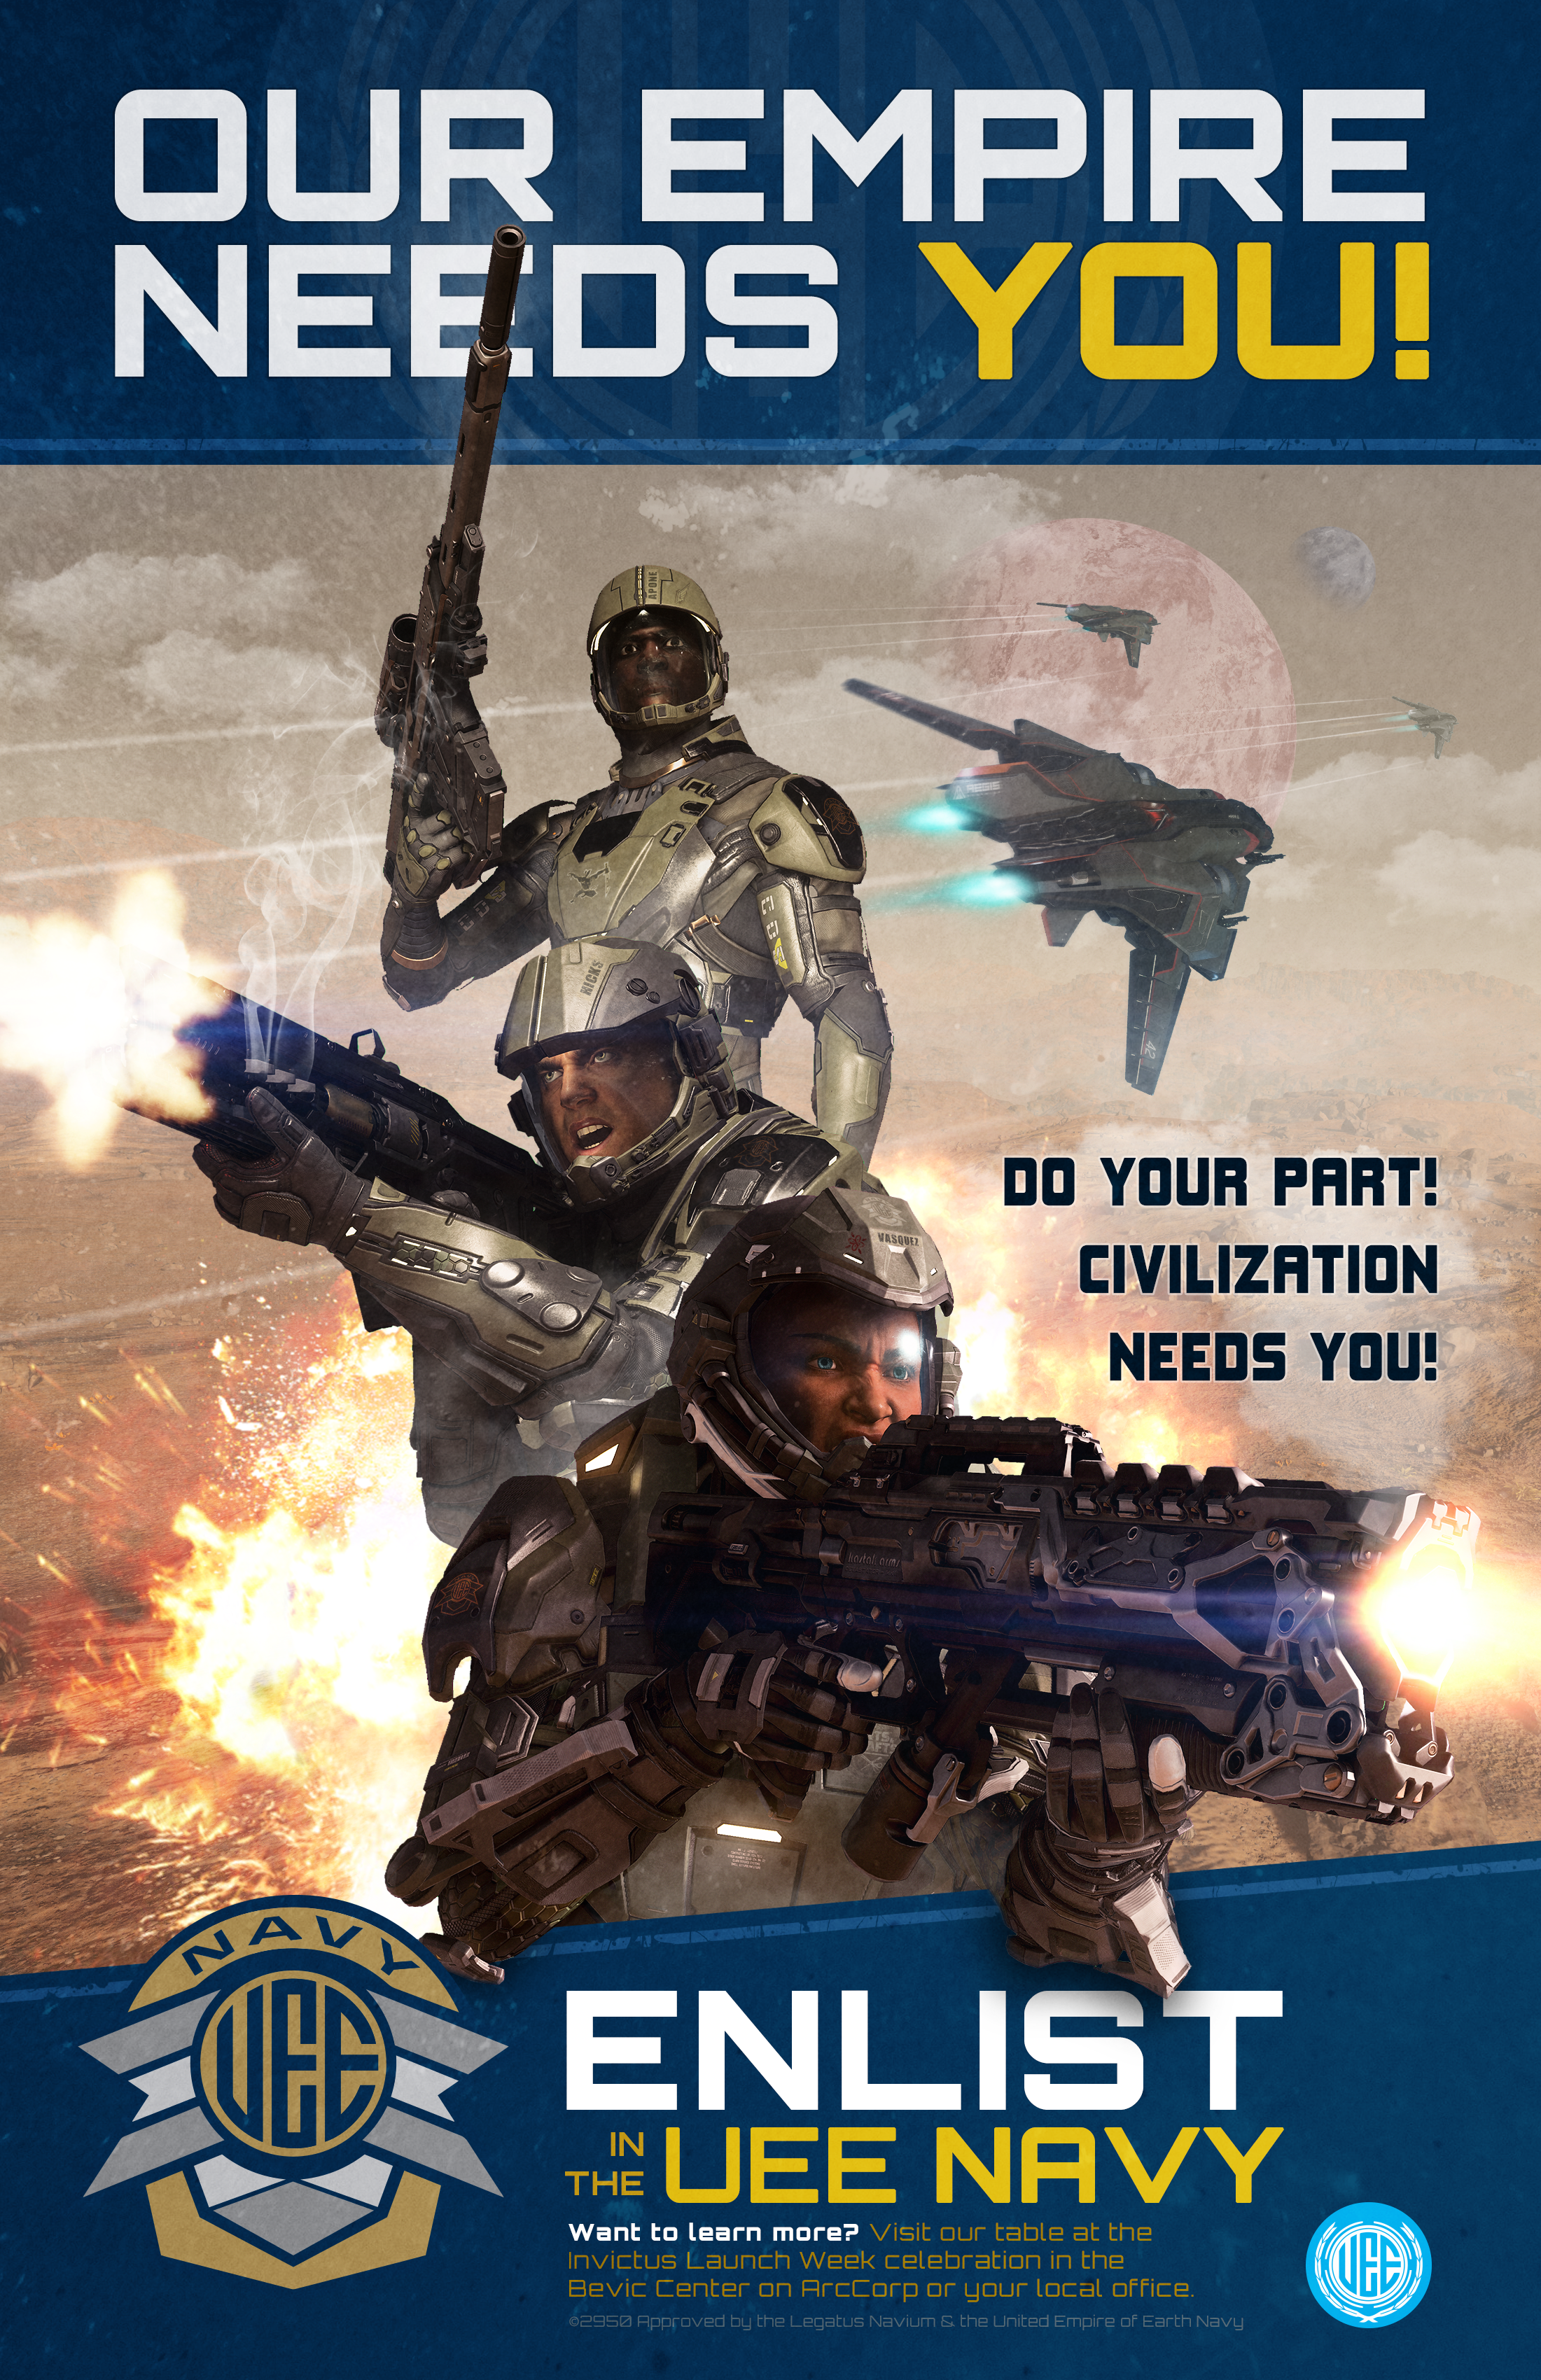 Fleet-Week-Recruitment-Poster_02.png